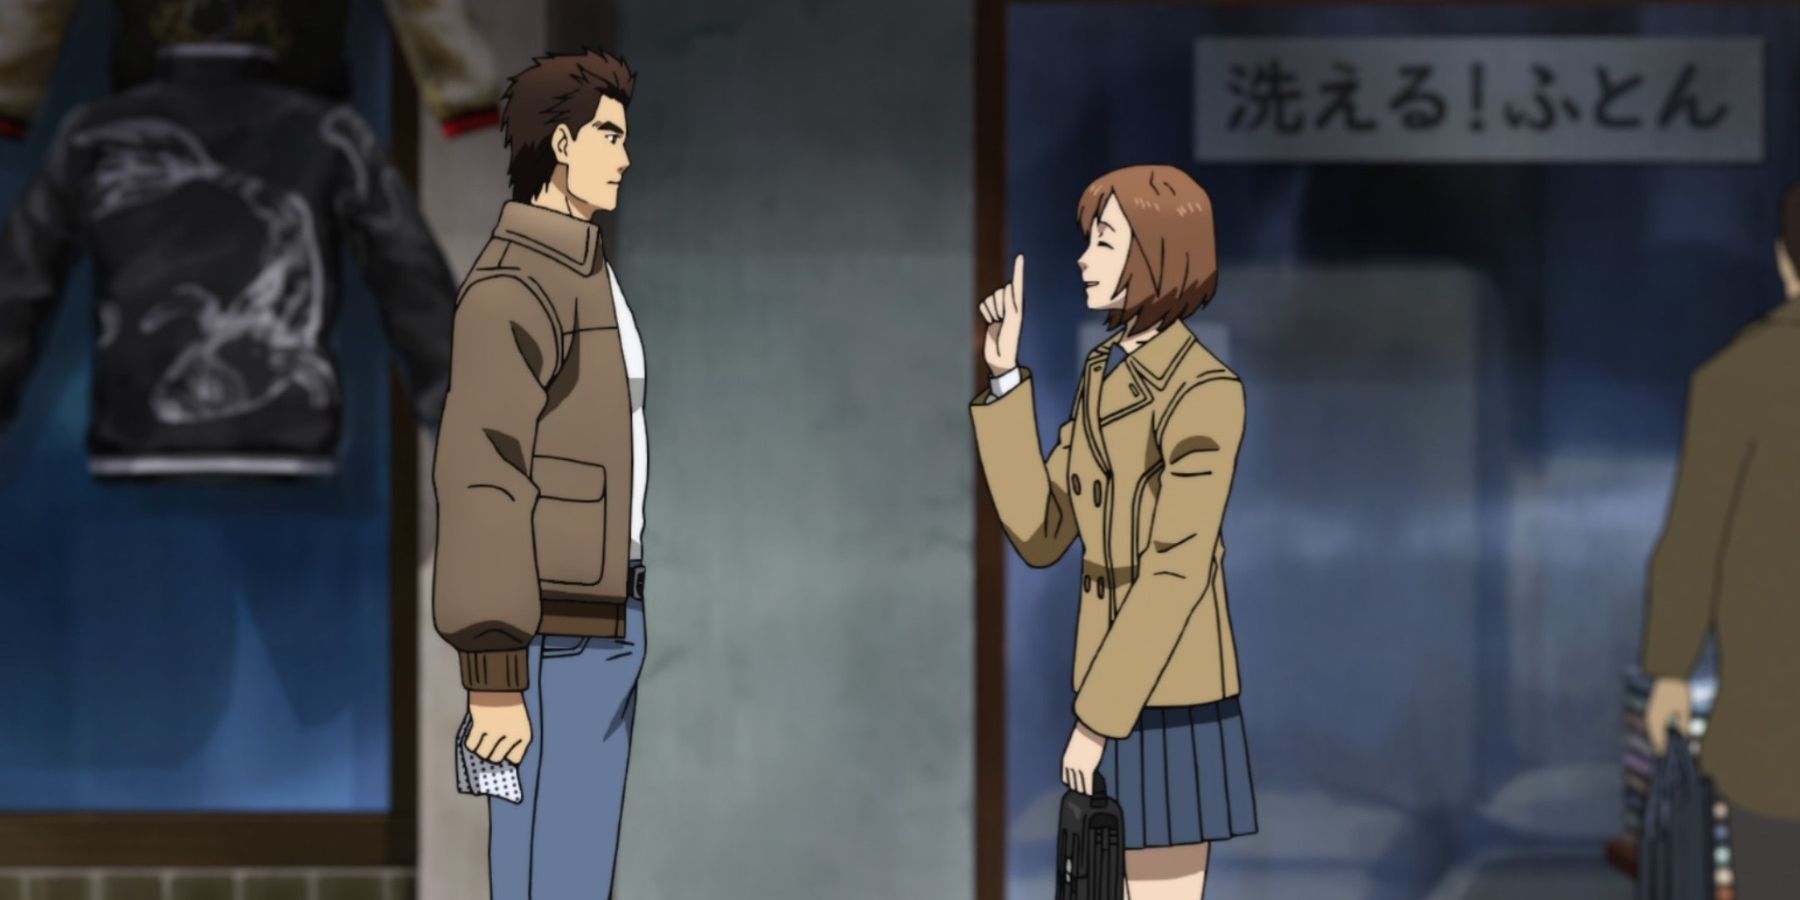 Ryo Hazuki and Nozomi Harasaki Shenmue anime